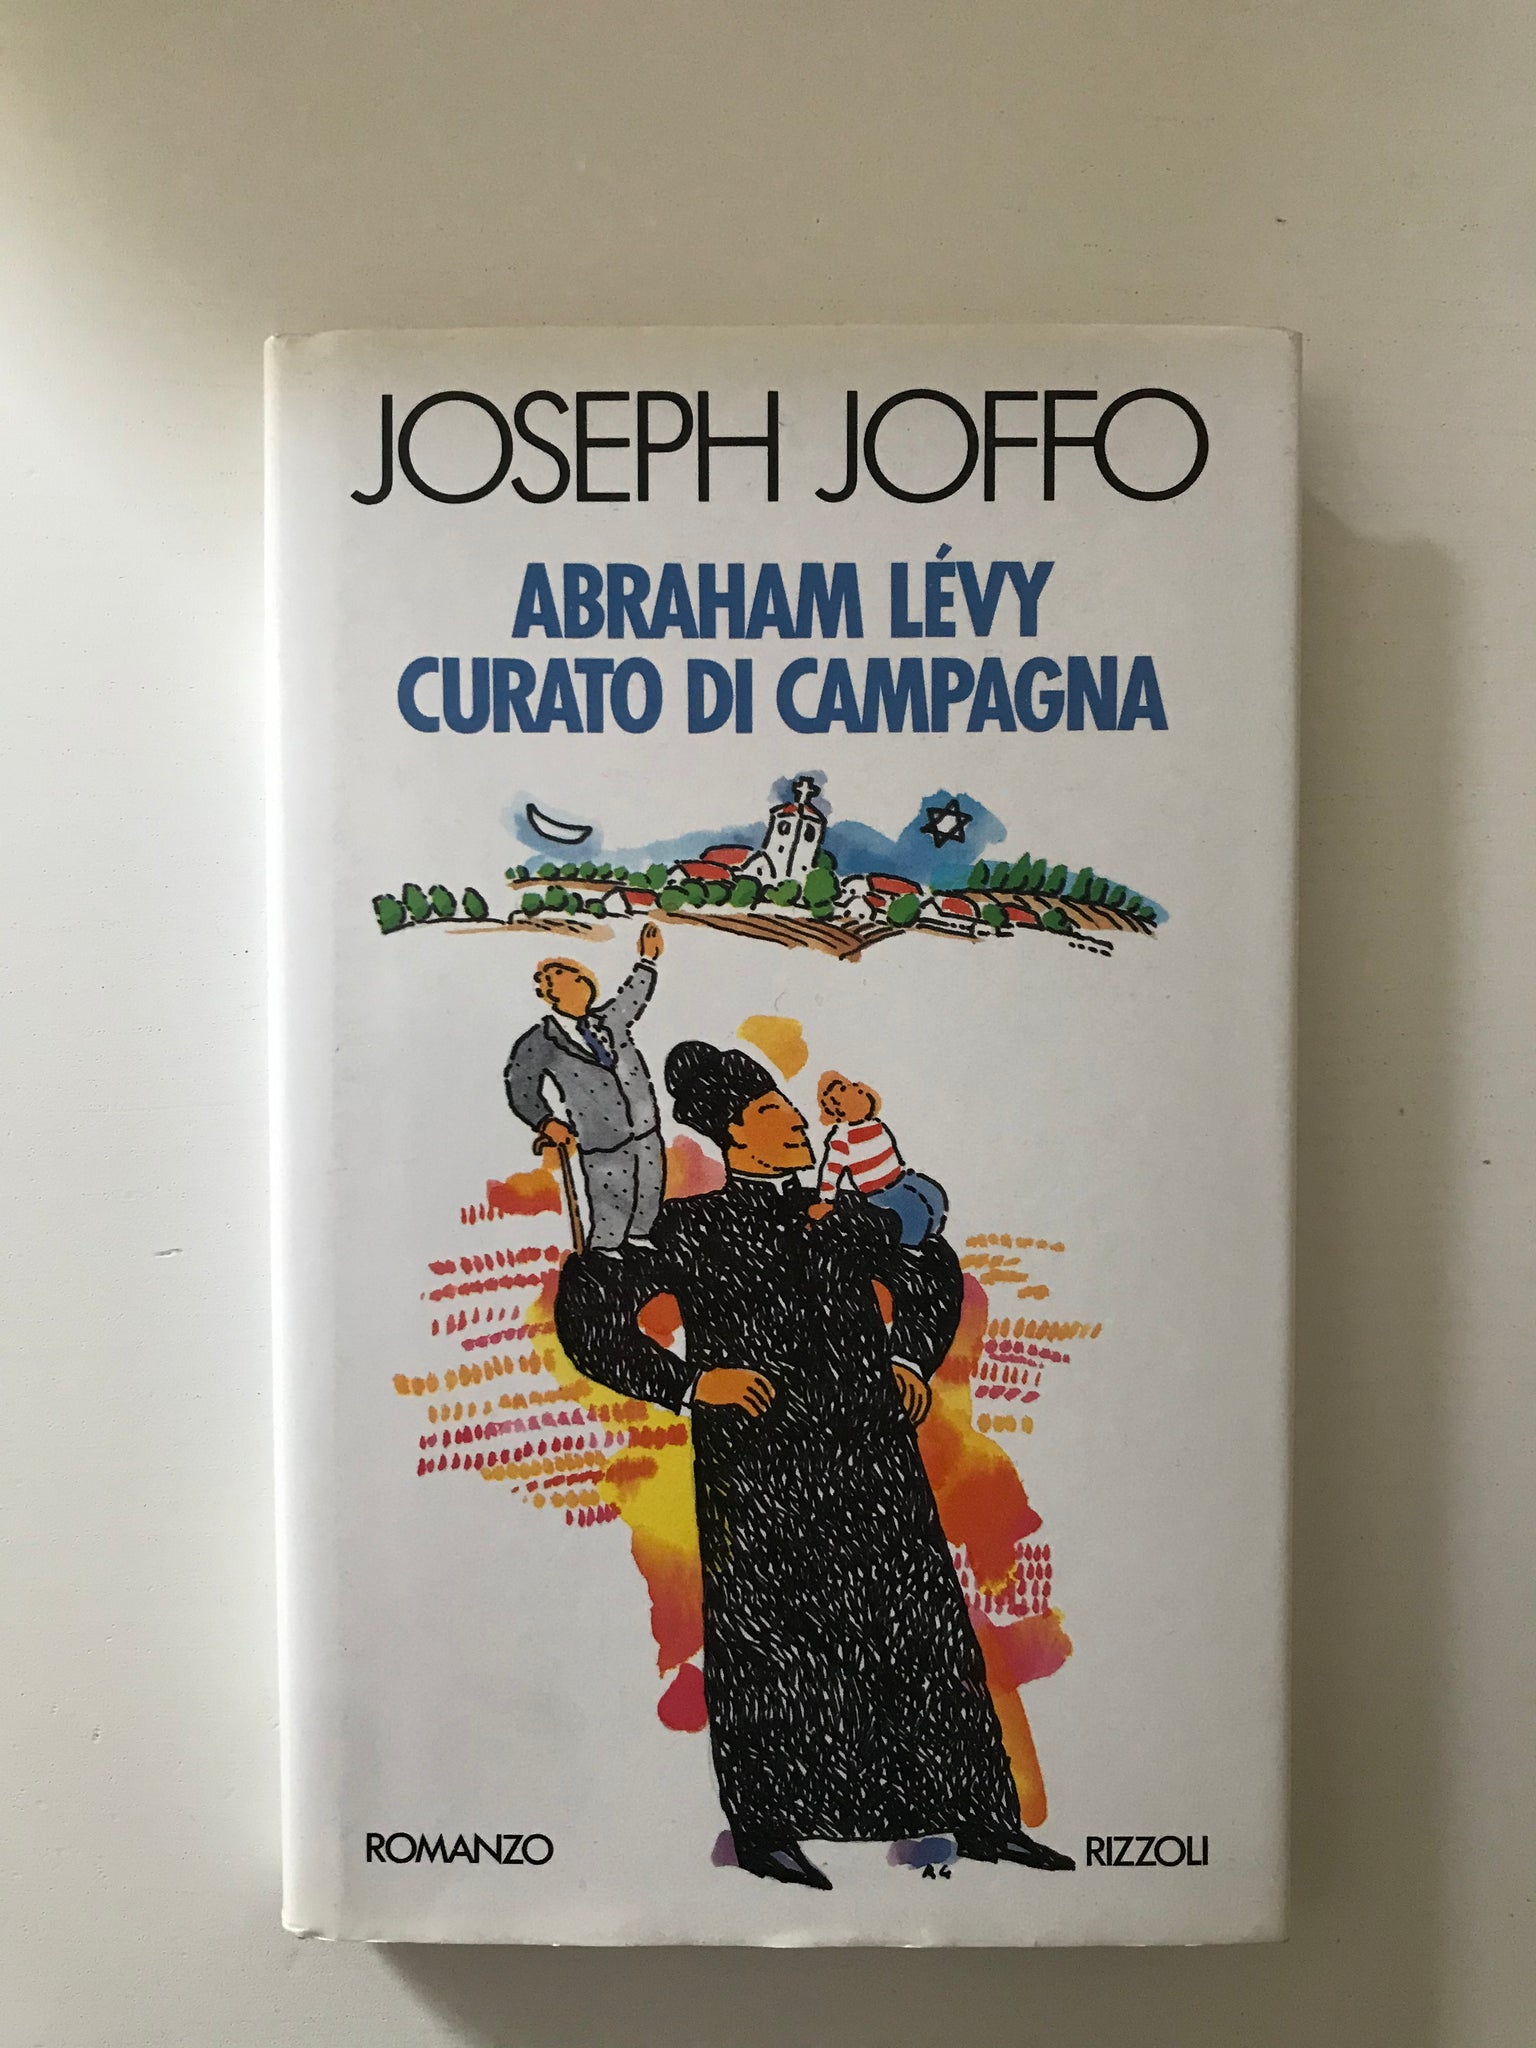 Joseph Joffo - Abraham Levy curato di campagna